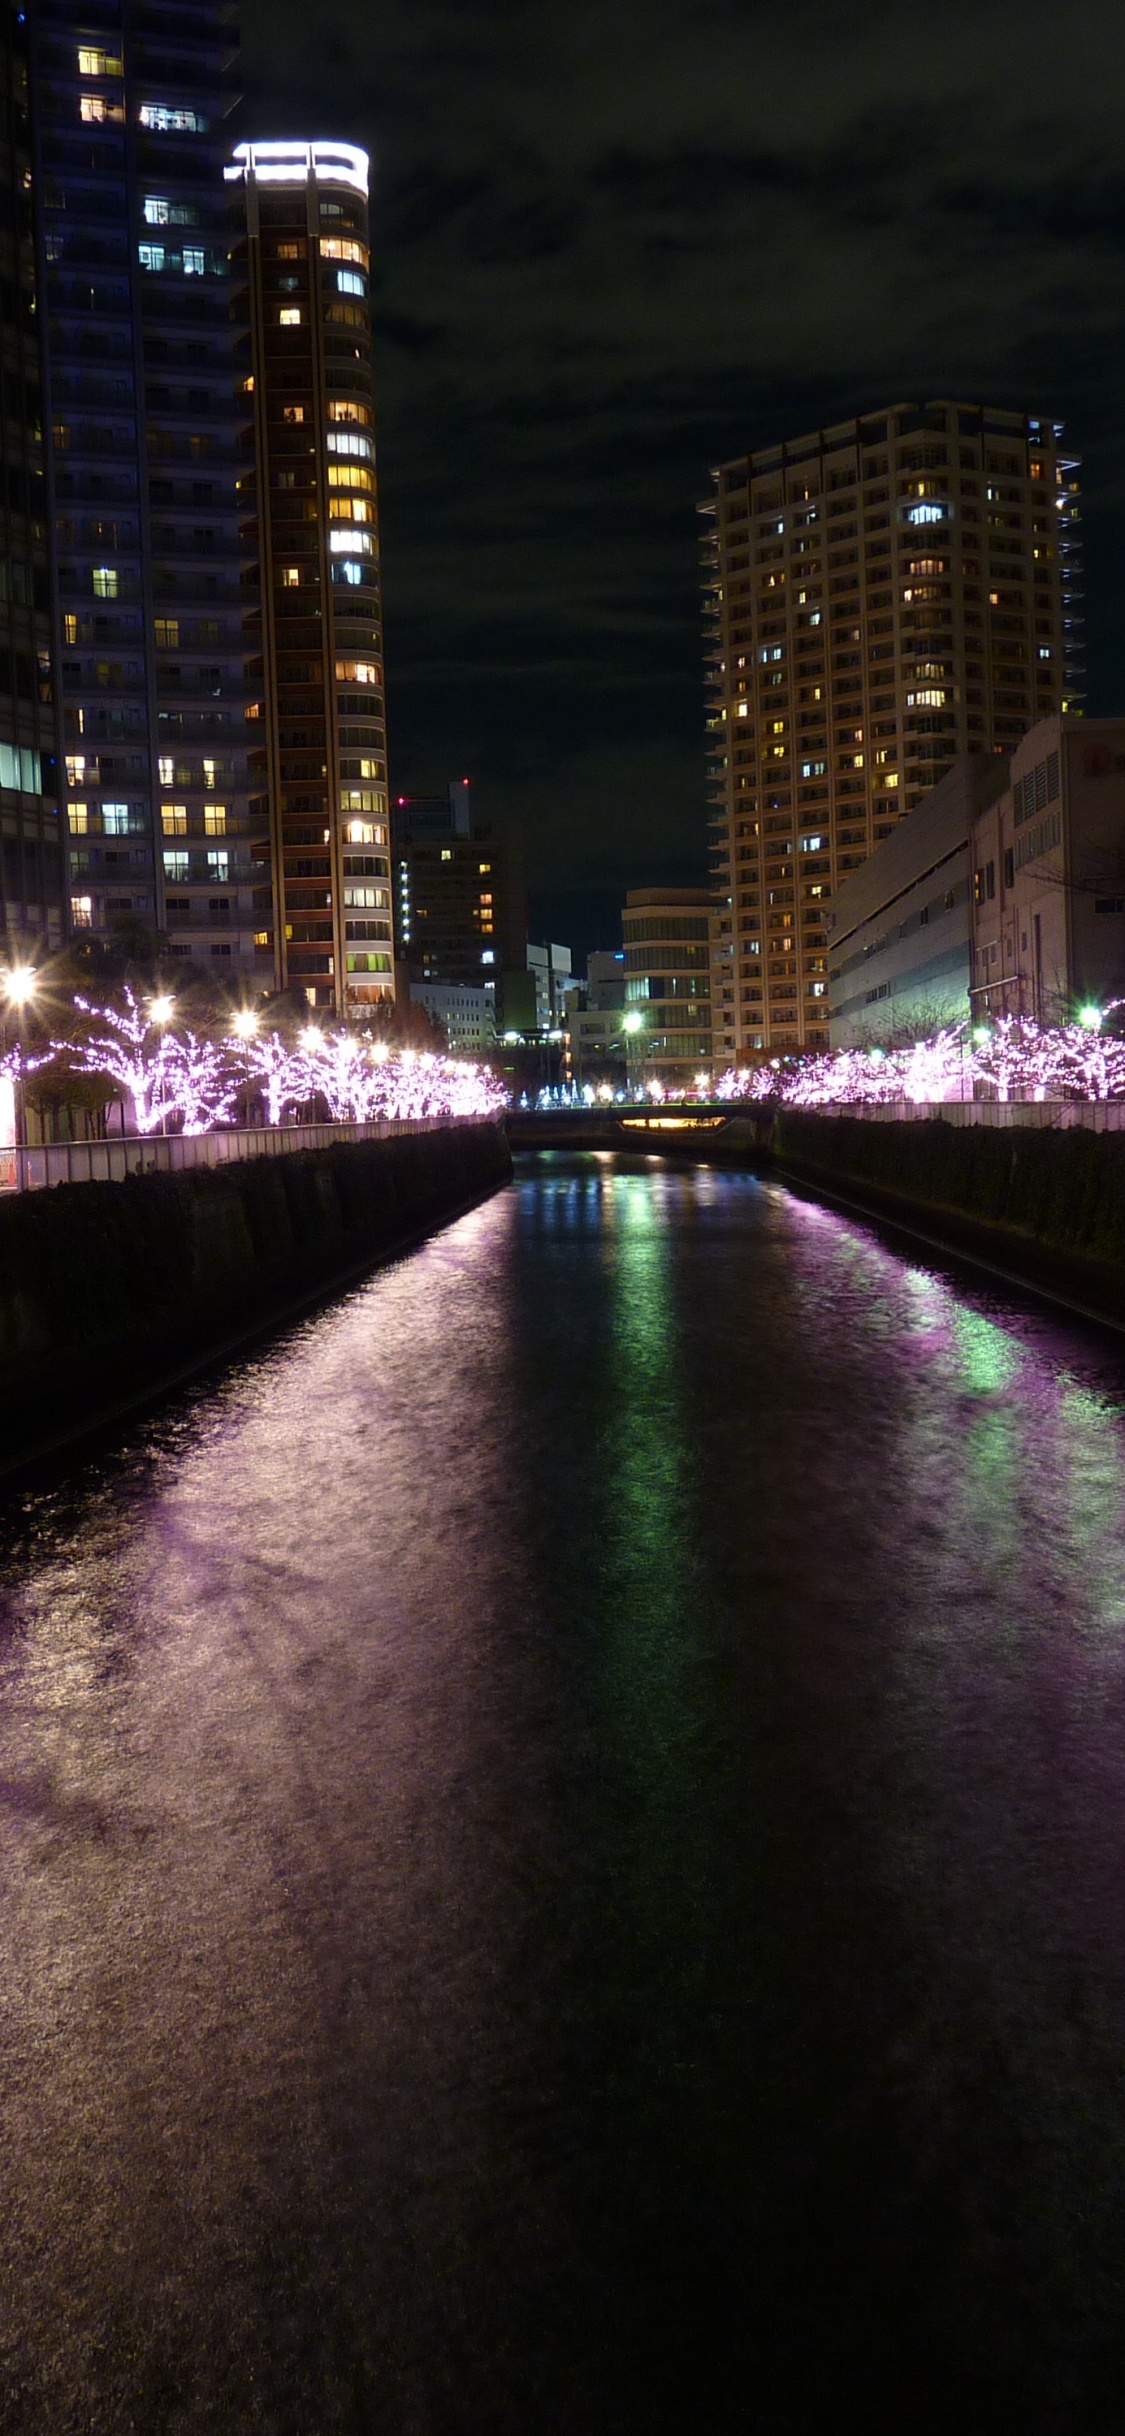 Lumières Violettes Sur le Pont Pendant la Nuit. Wallpaper in 1125x2436 Resolution